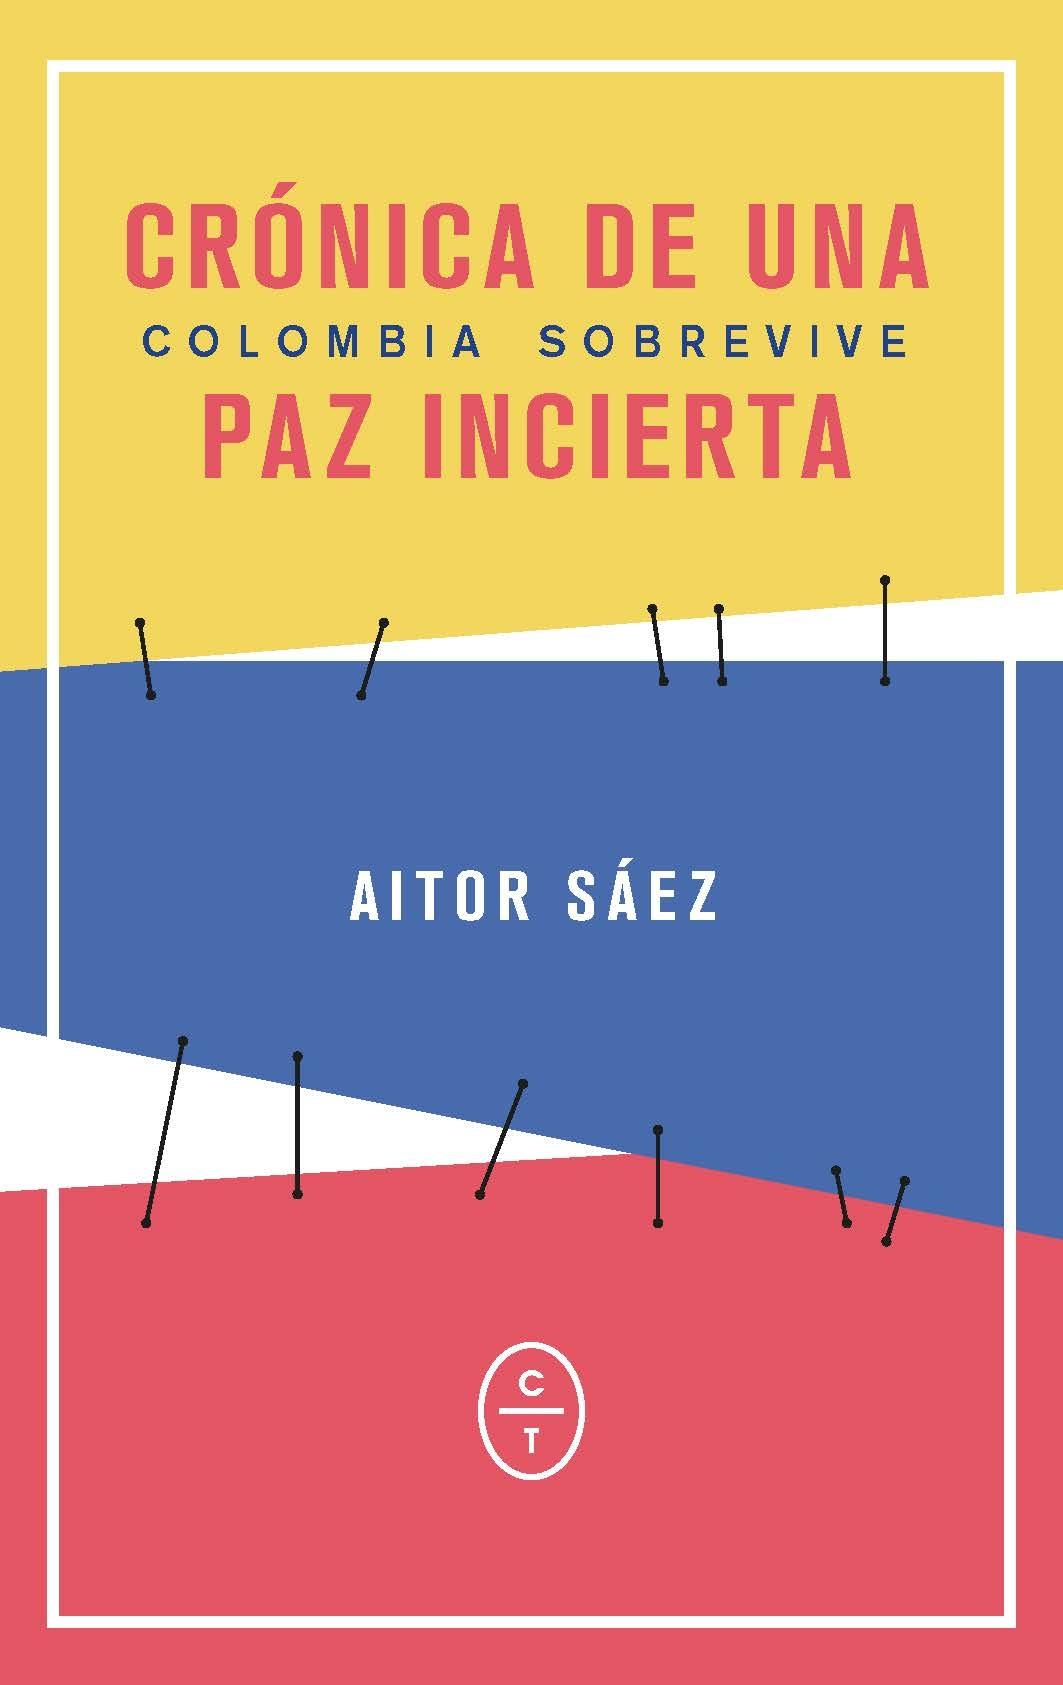 Colombia Sobrevive "Cronica de una Paz Incierta"